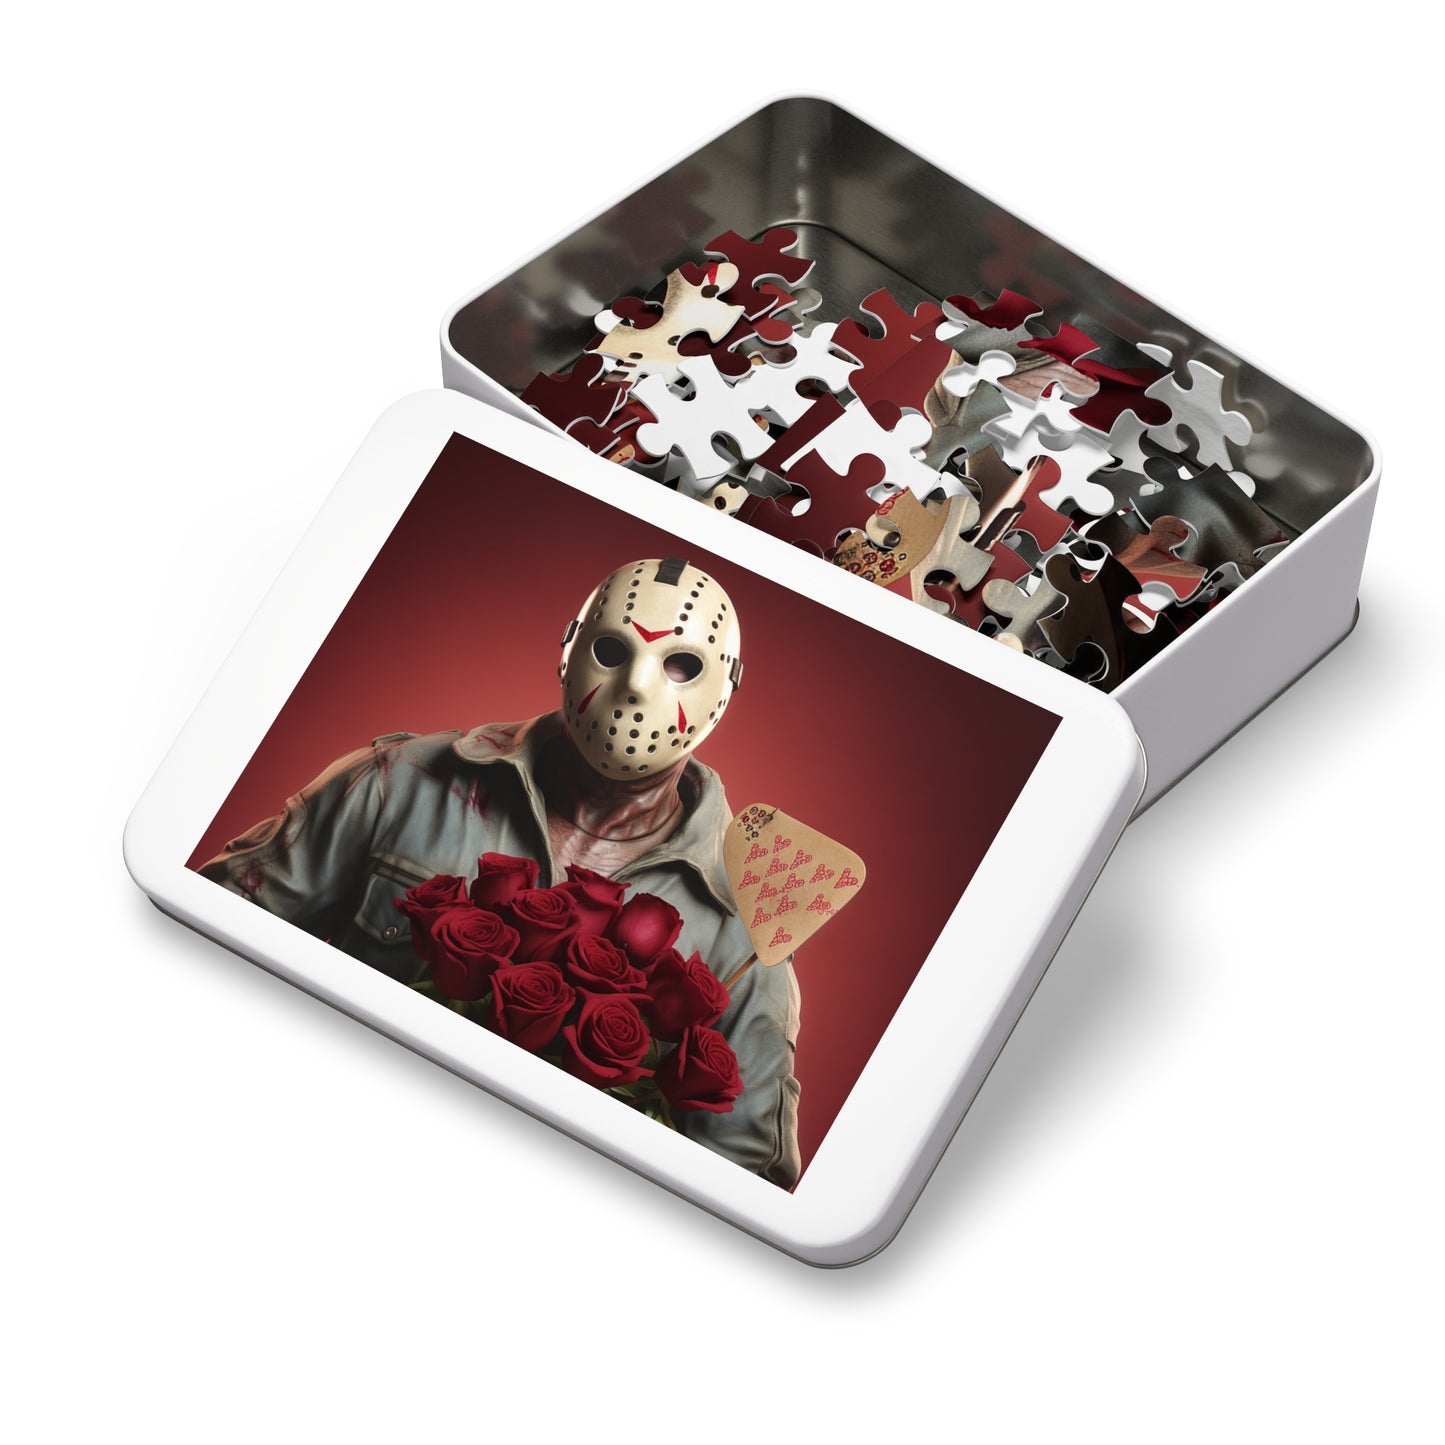 Jason's Valentine   Jigsaw Puzzle (30, 110, 252, 500,1000-Piece)